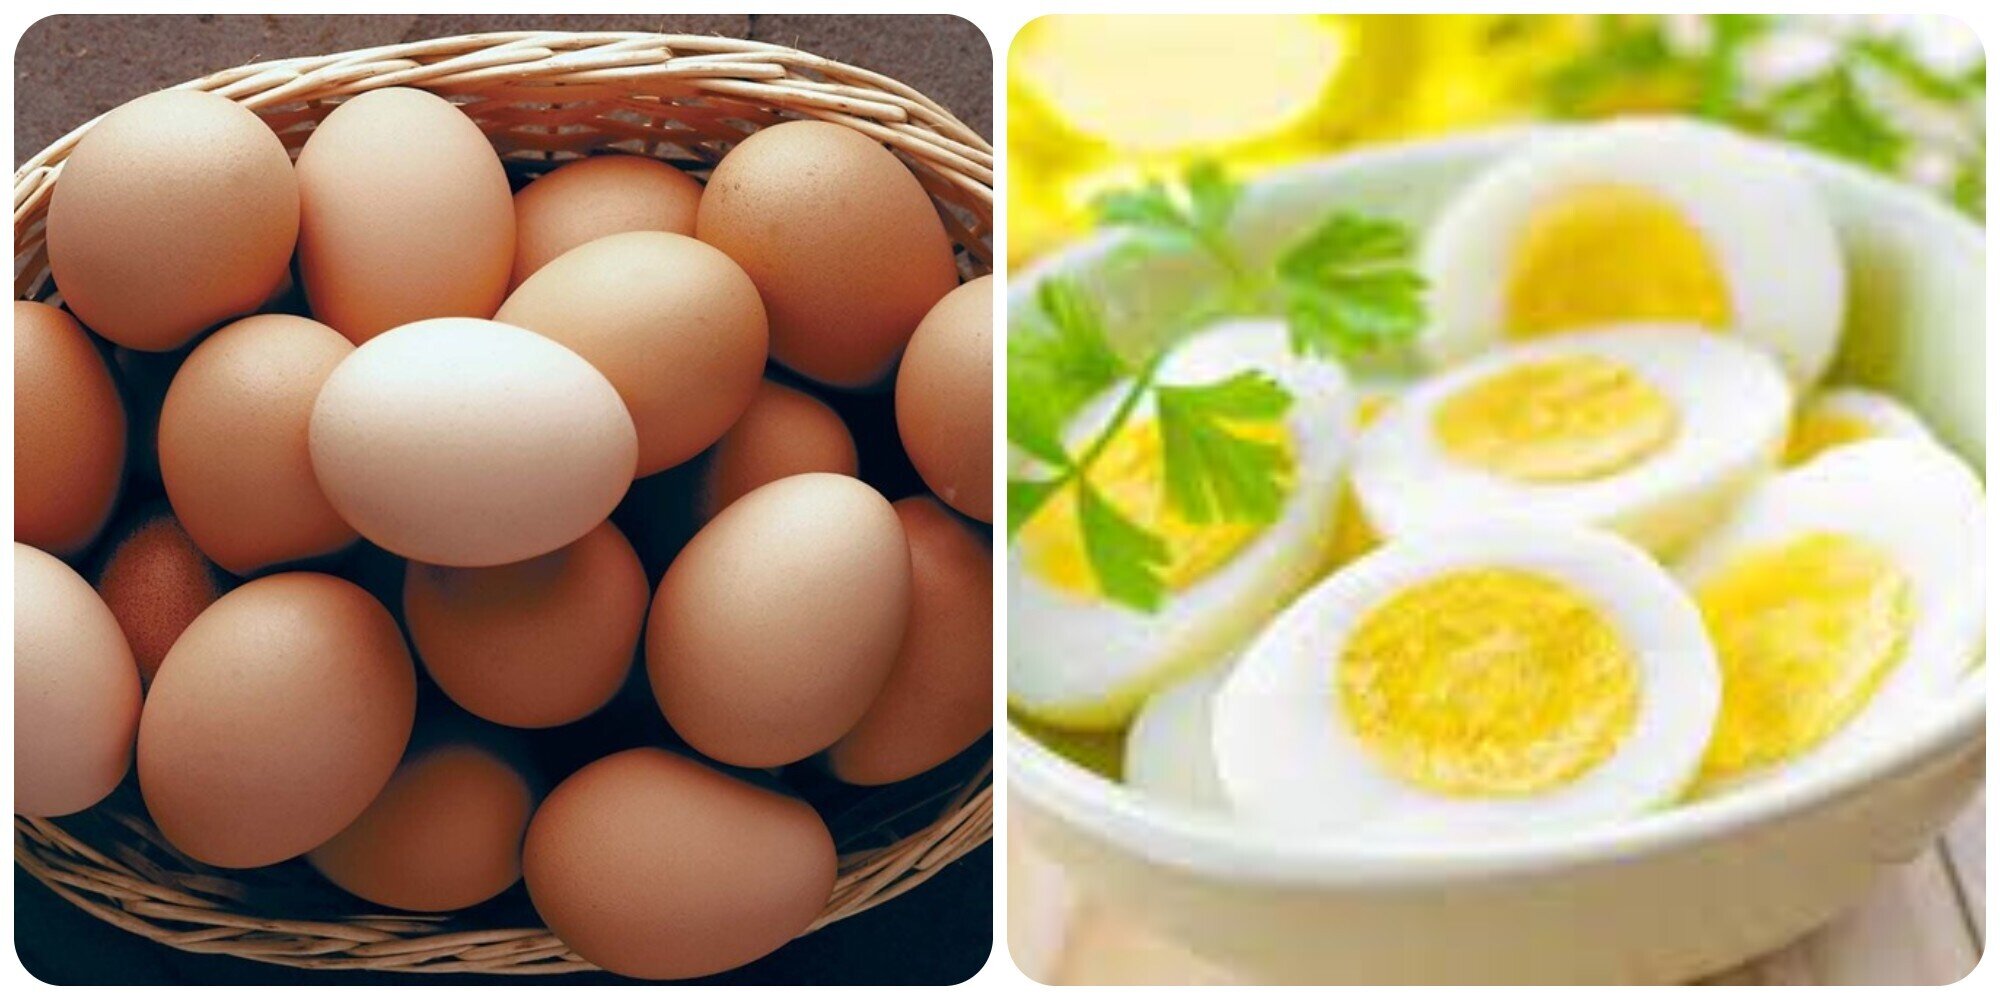 Trứng được mệnh danh là siêu thực phẩm được nhiều người yêu thích